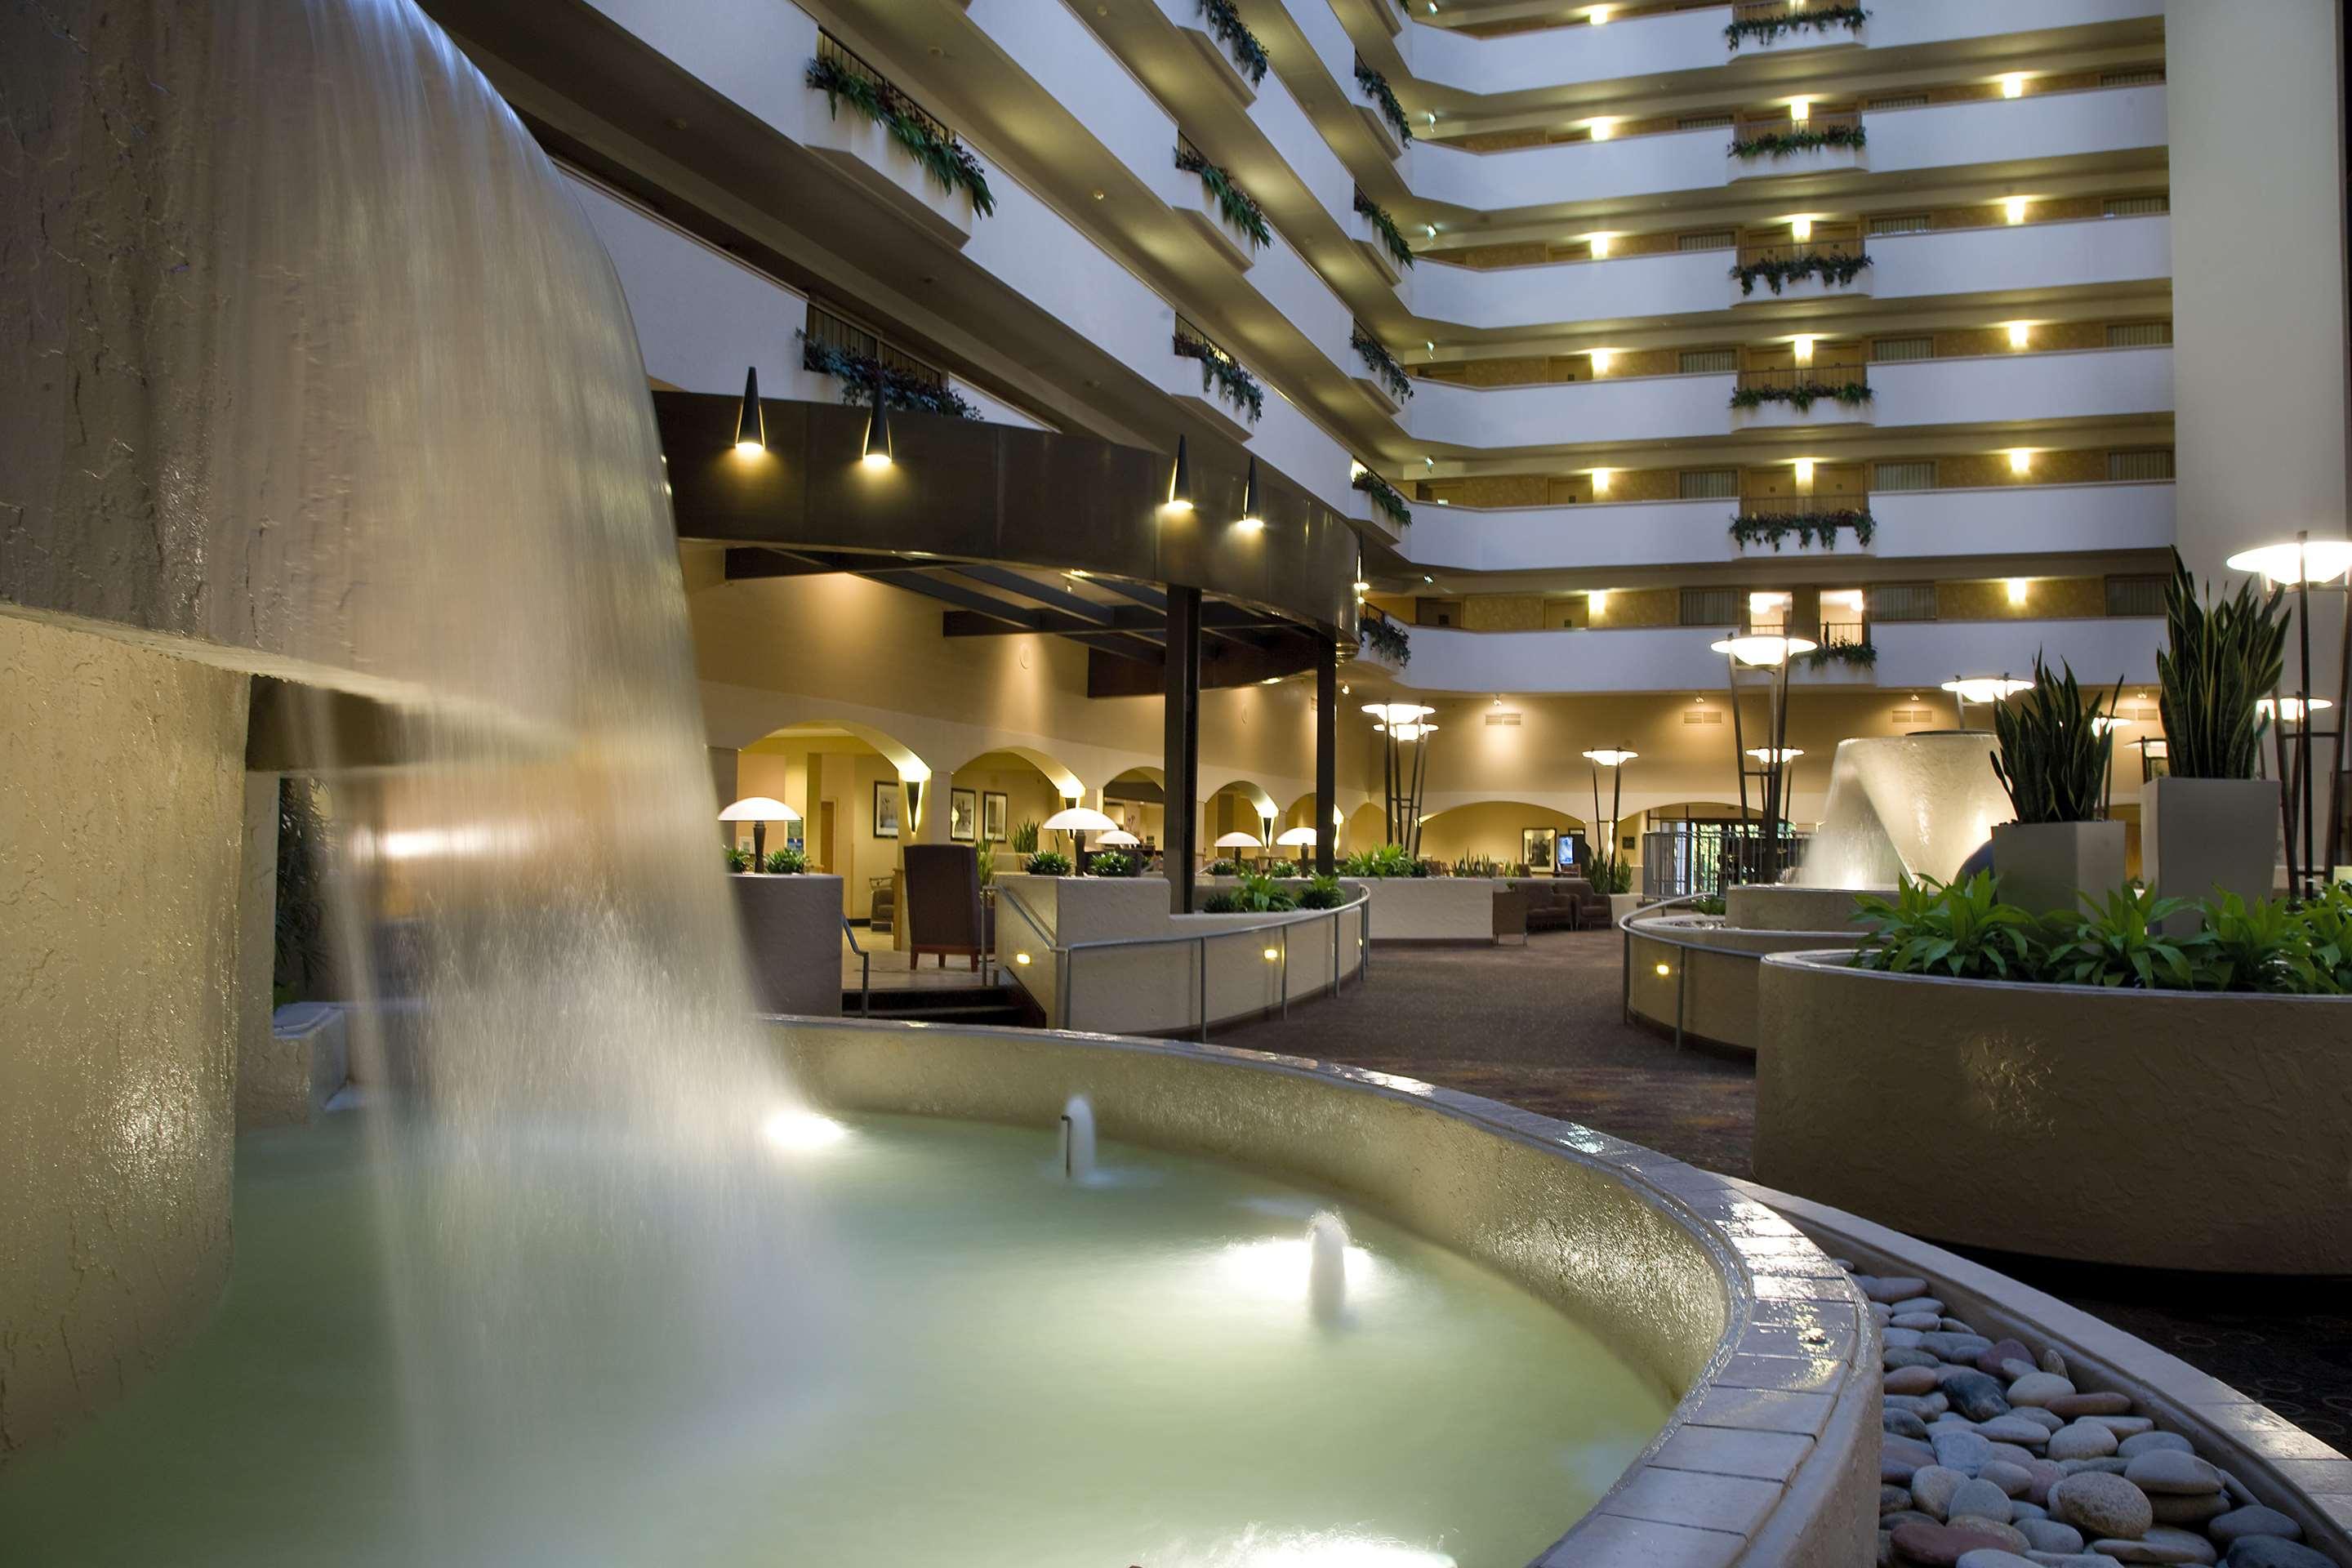 Embassy Suites by Hilton Sacramento Riverfront Promenade - Venue -  Sacramento, CA - WeddingWire